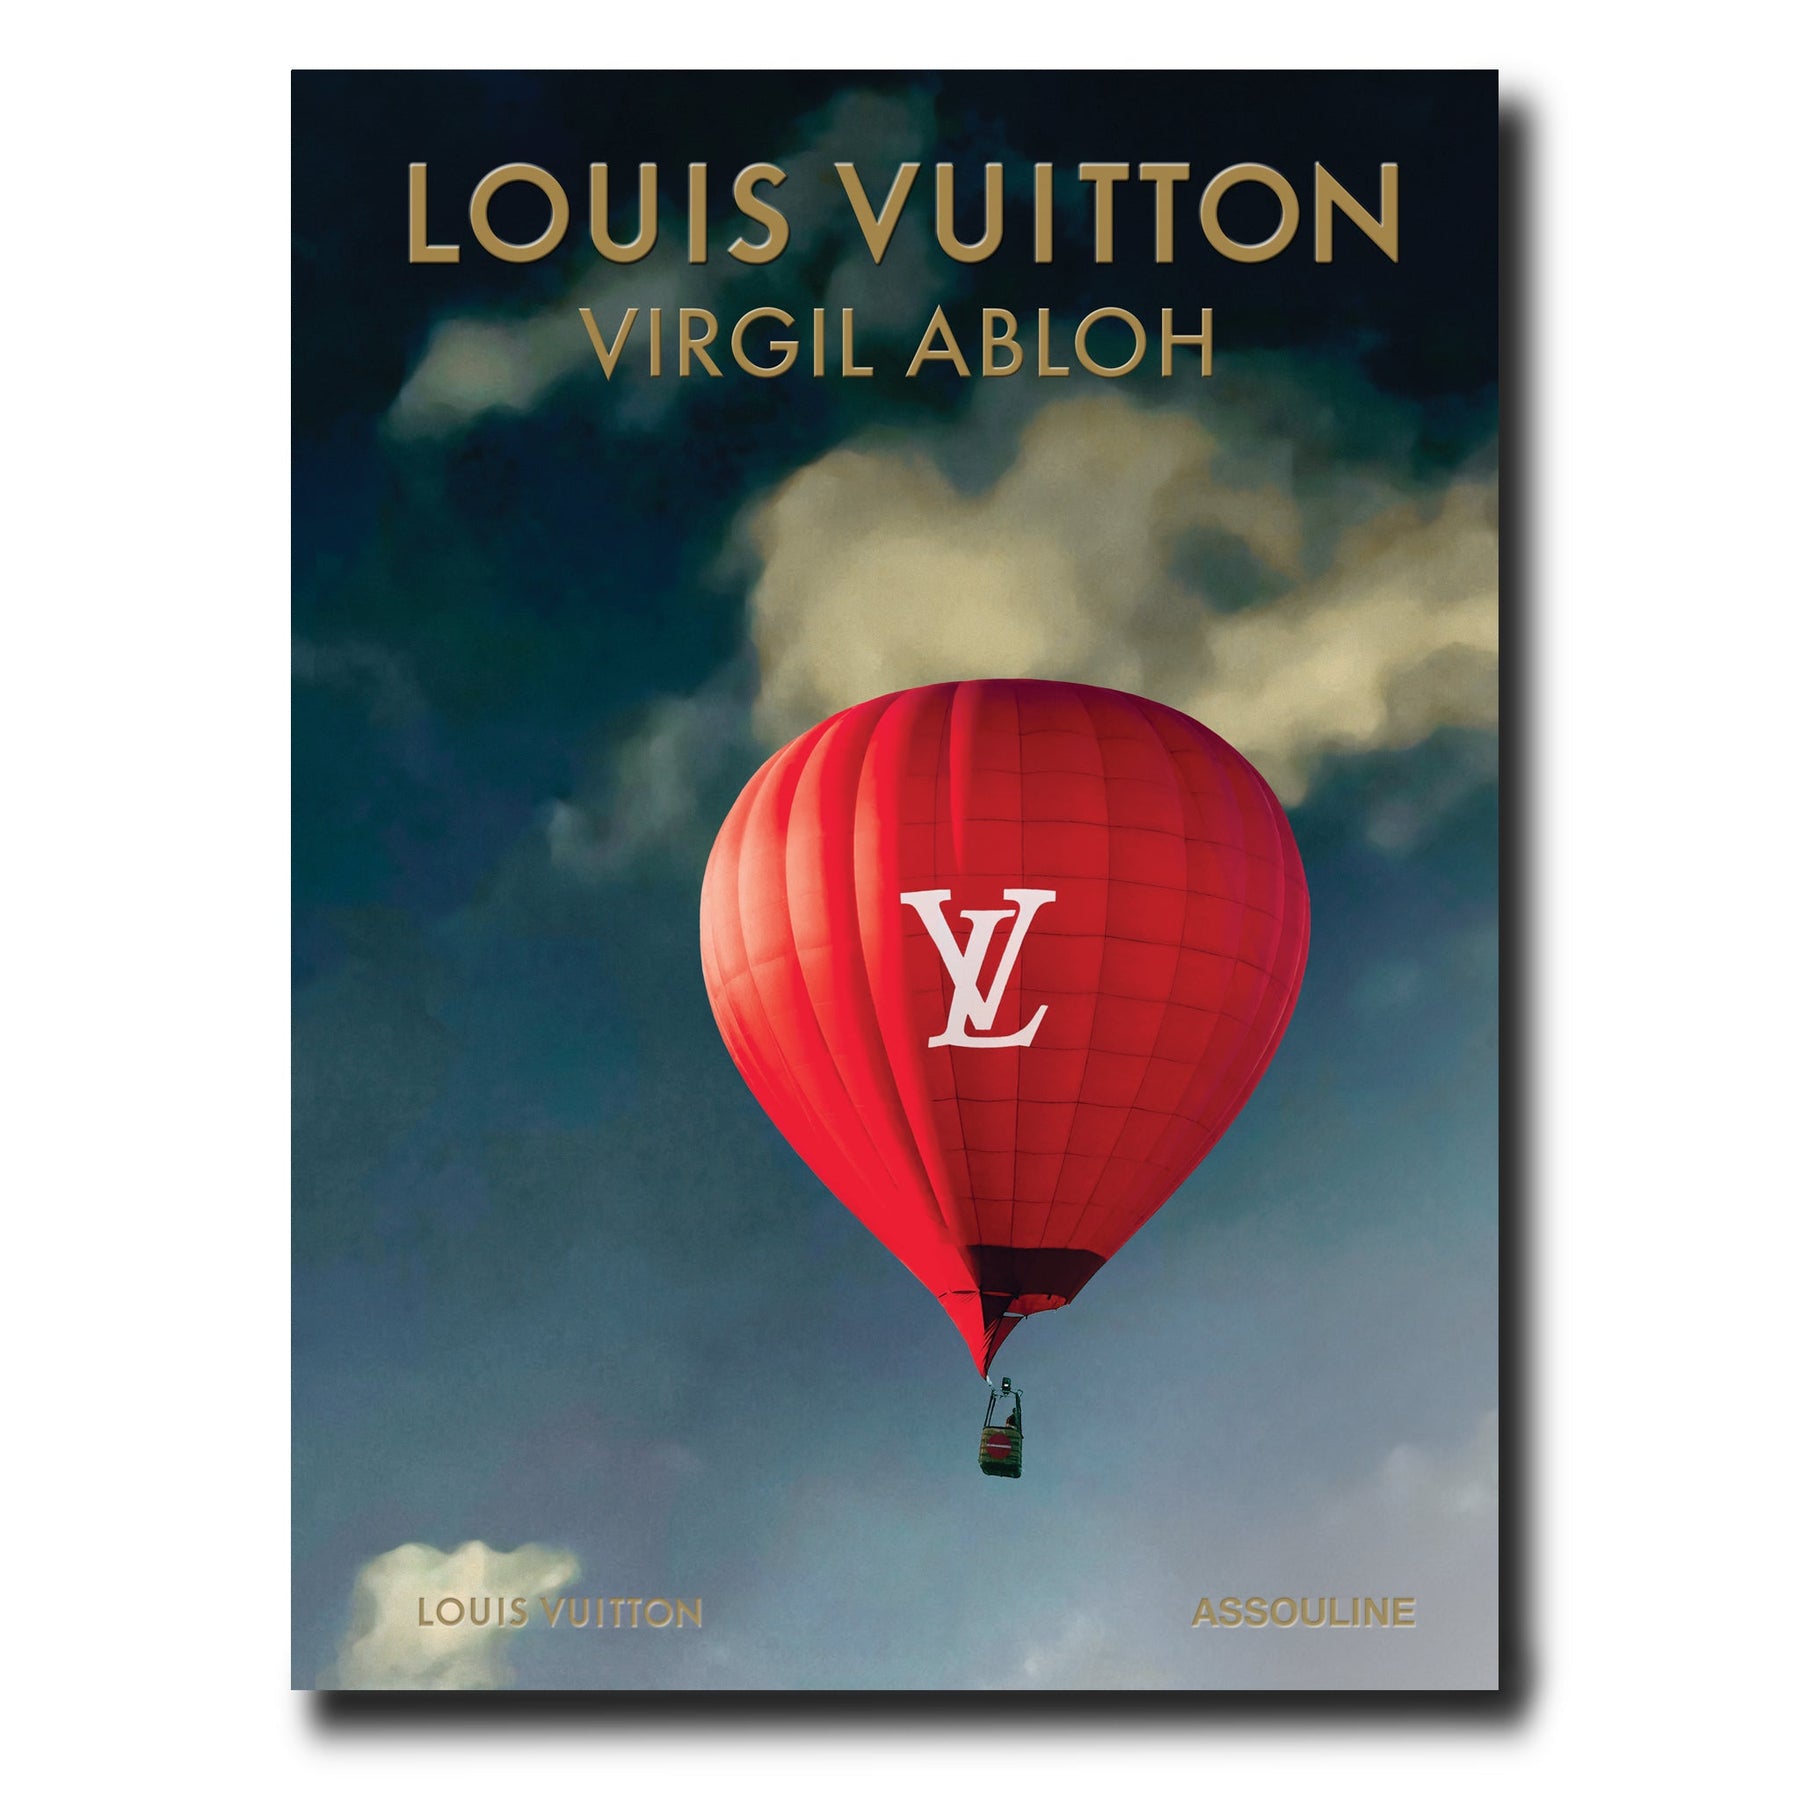 Assouline LV Virgil Abloh Balloon Cover